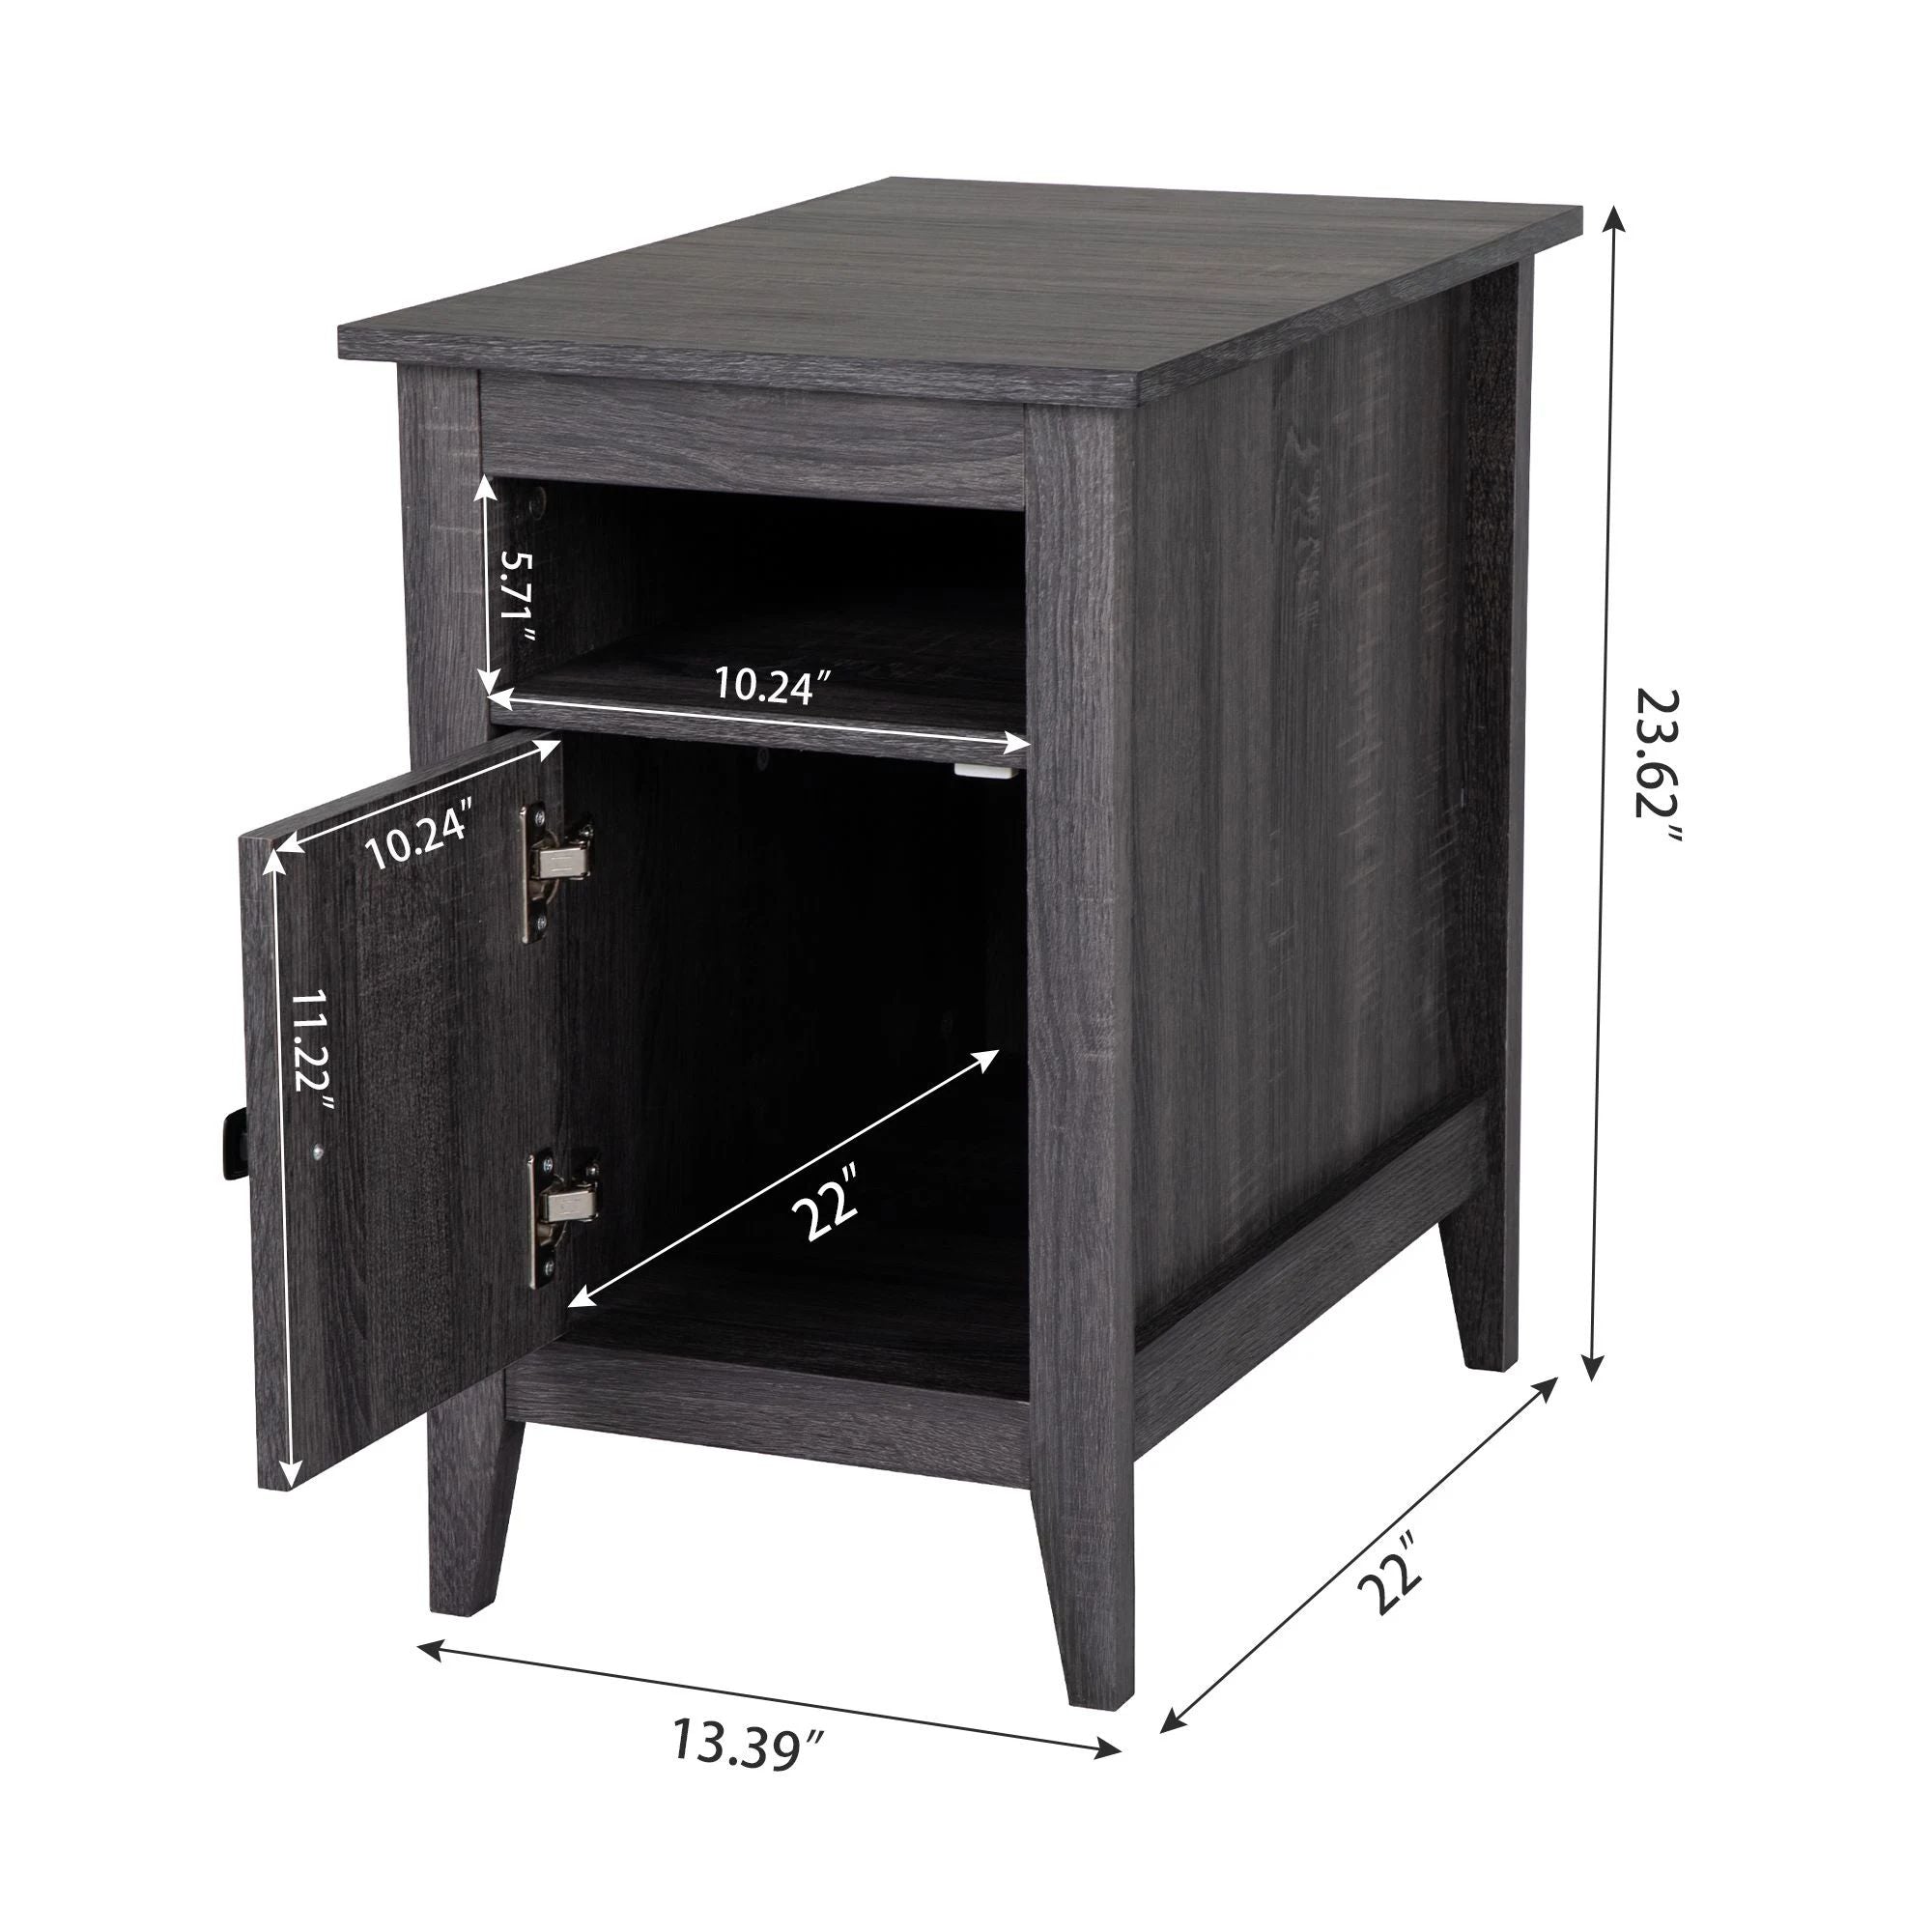 Nightstand with one-door storage cabinet and open shelf